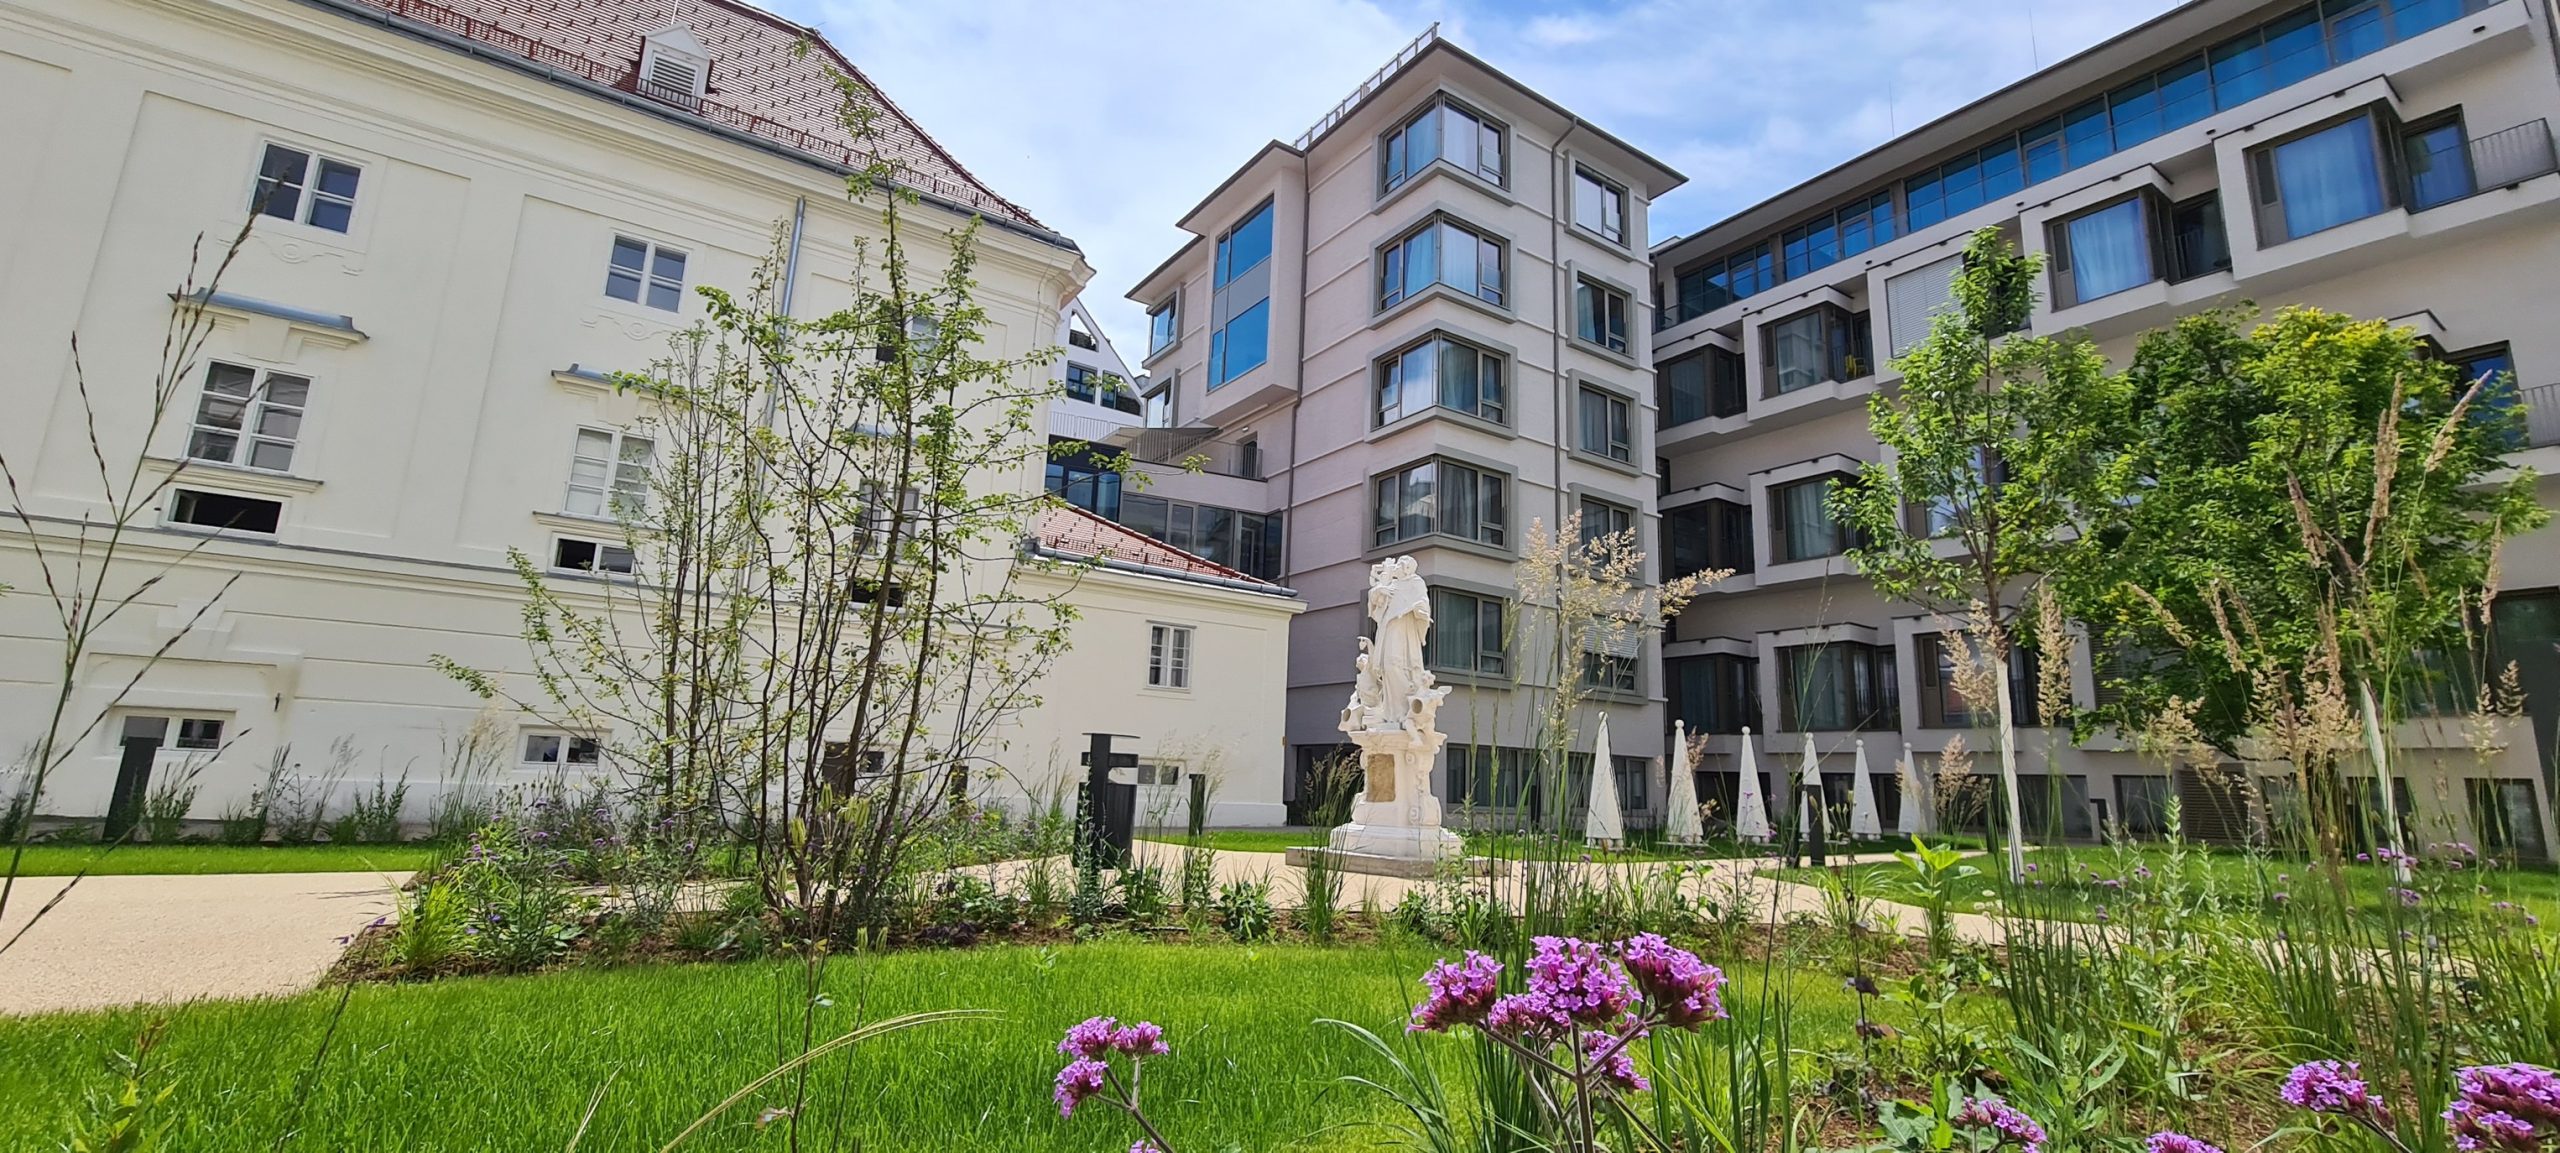 Der Malteserorden eröffnet ein neues Seniorenheim in der Wiener Innenstadt